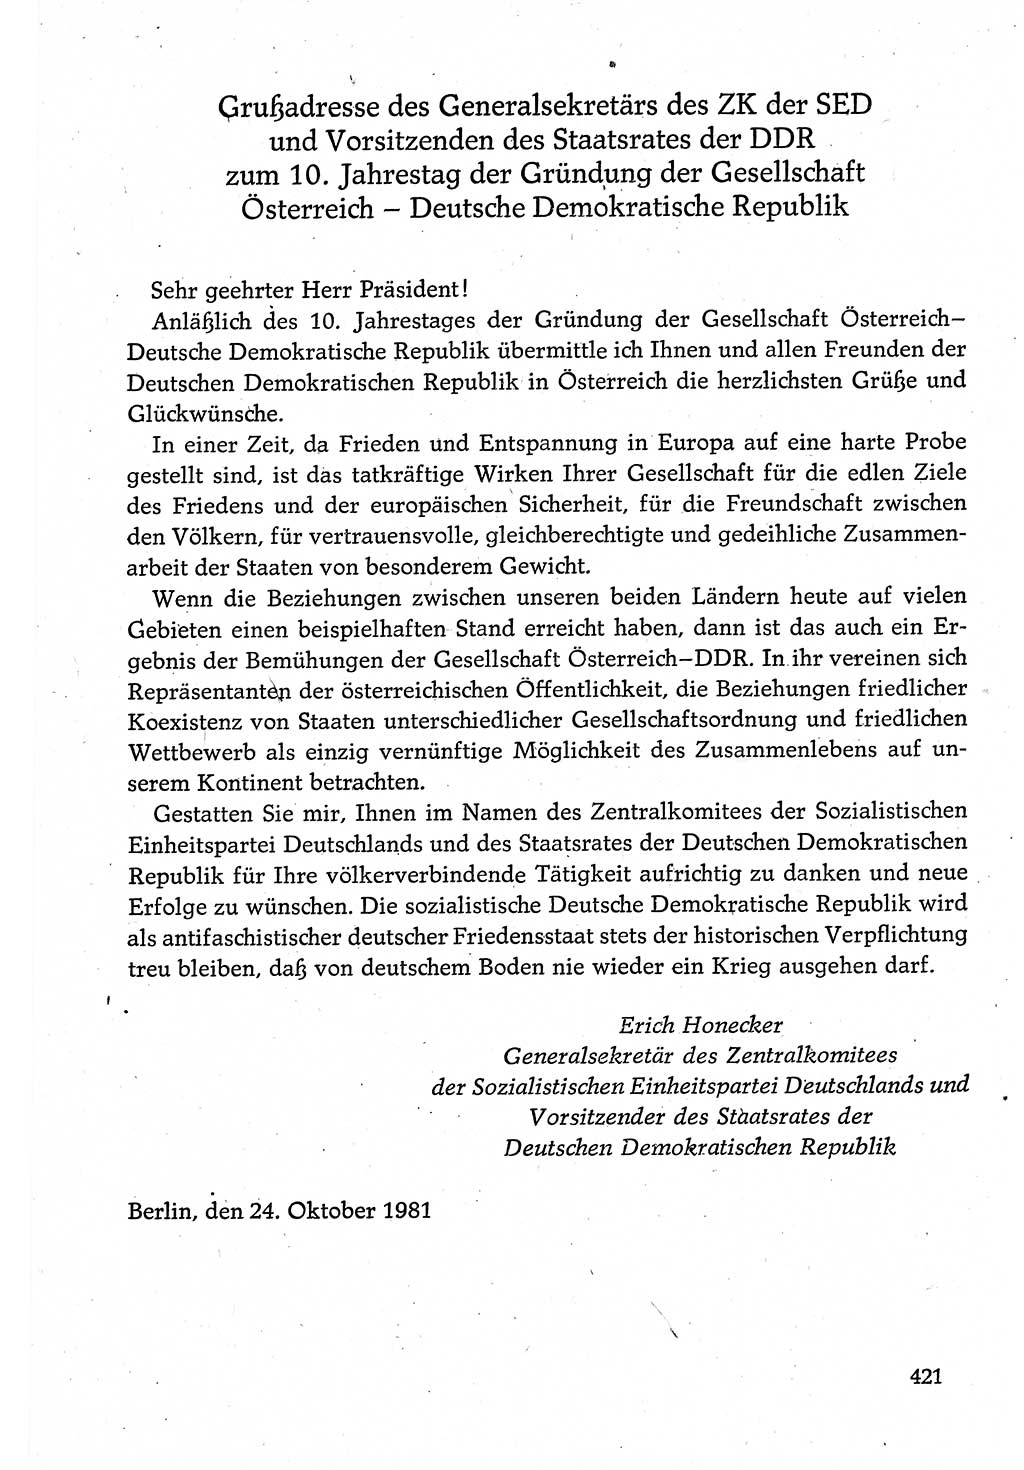 Dokumente der Sozialistischen Einheitspartei Deutschlands (SED) [Deutsche Demokratische Republik (DDR)] 1980-1981, Seite 421 (Dok. SED DDR 1980-1981, S. 421)